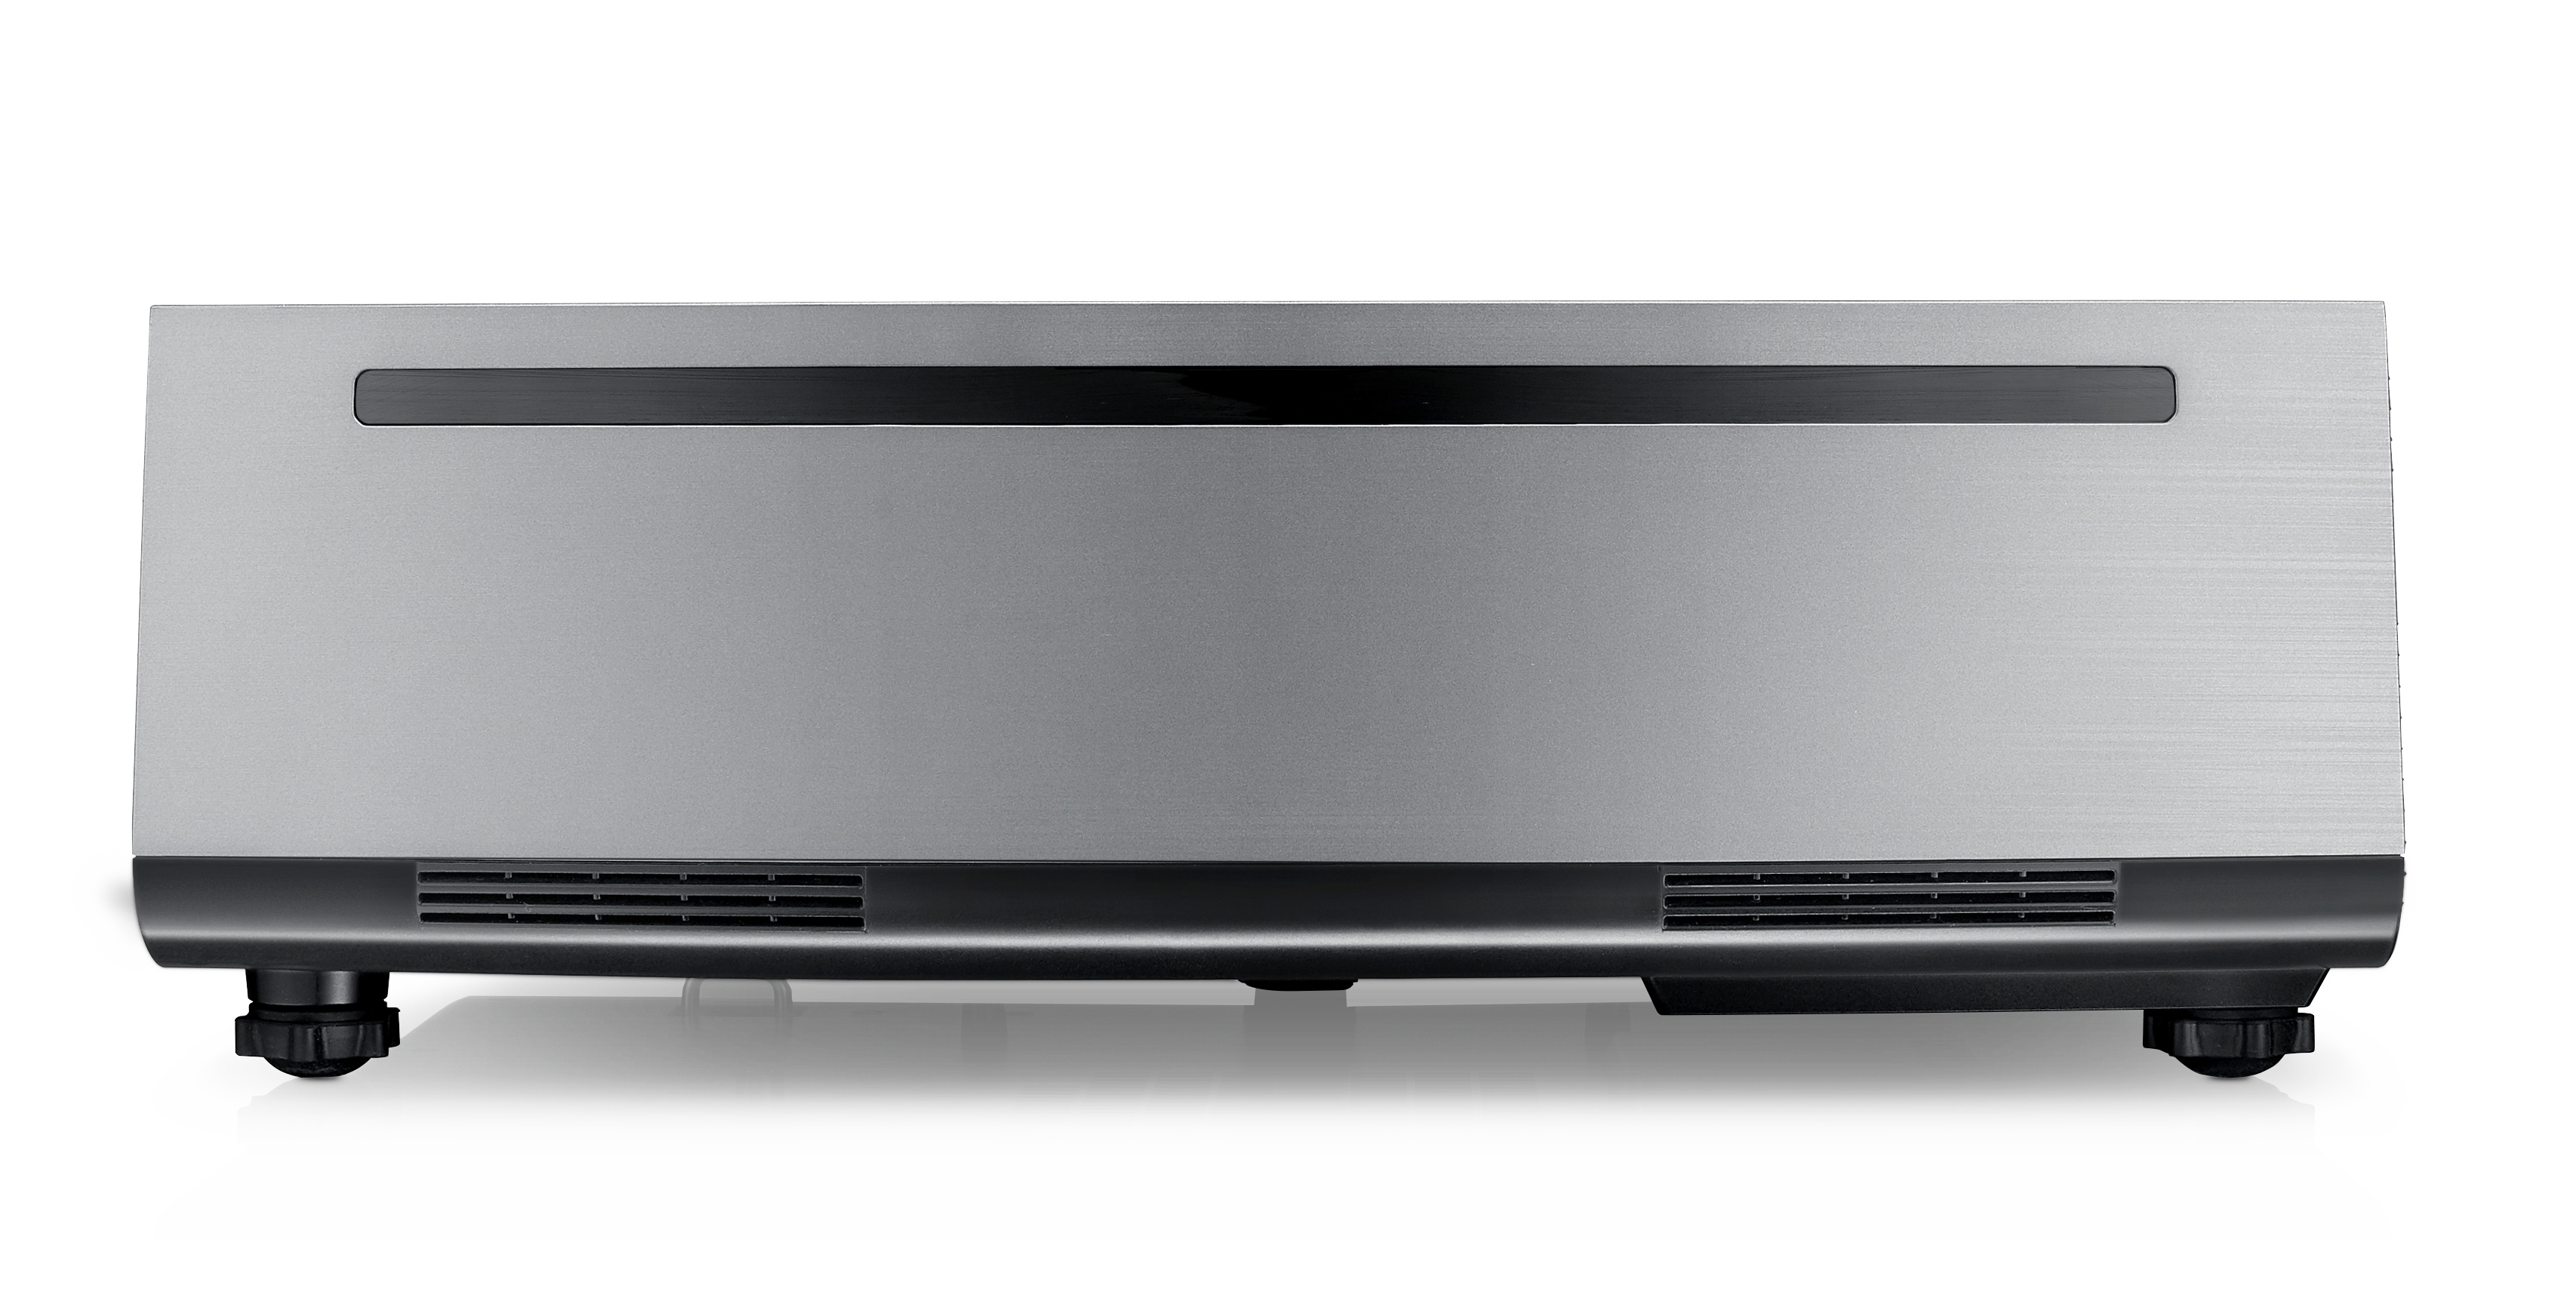 S718QL DELL ANSI-Lumen) Beamer(Full-HD, 5000